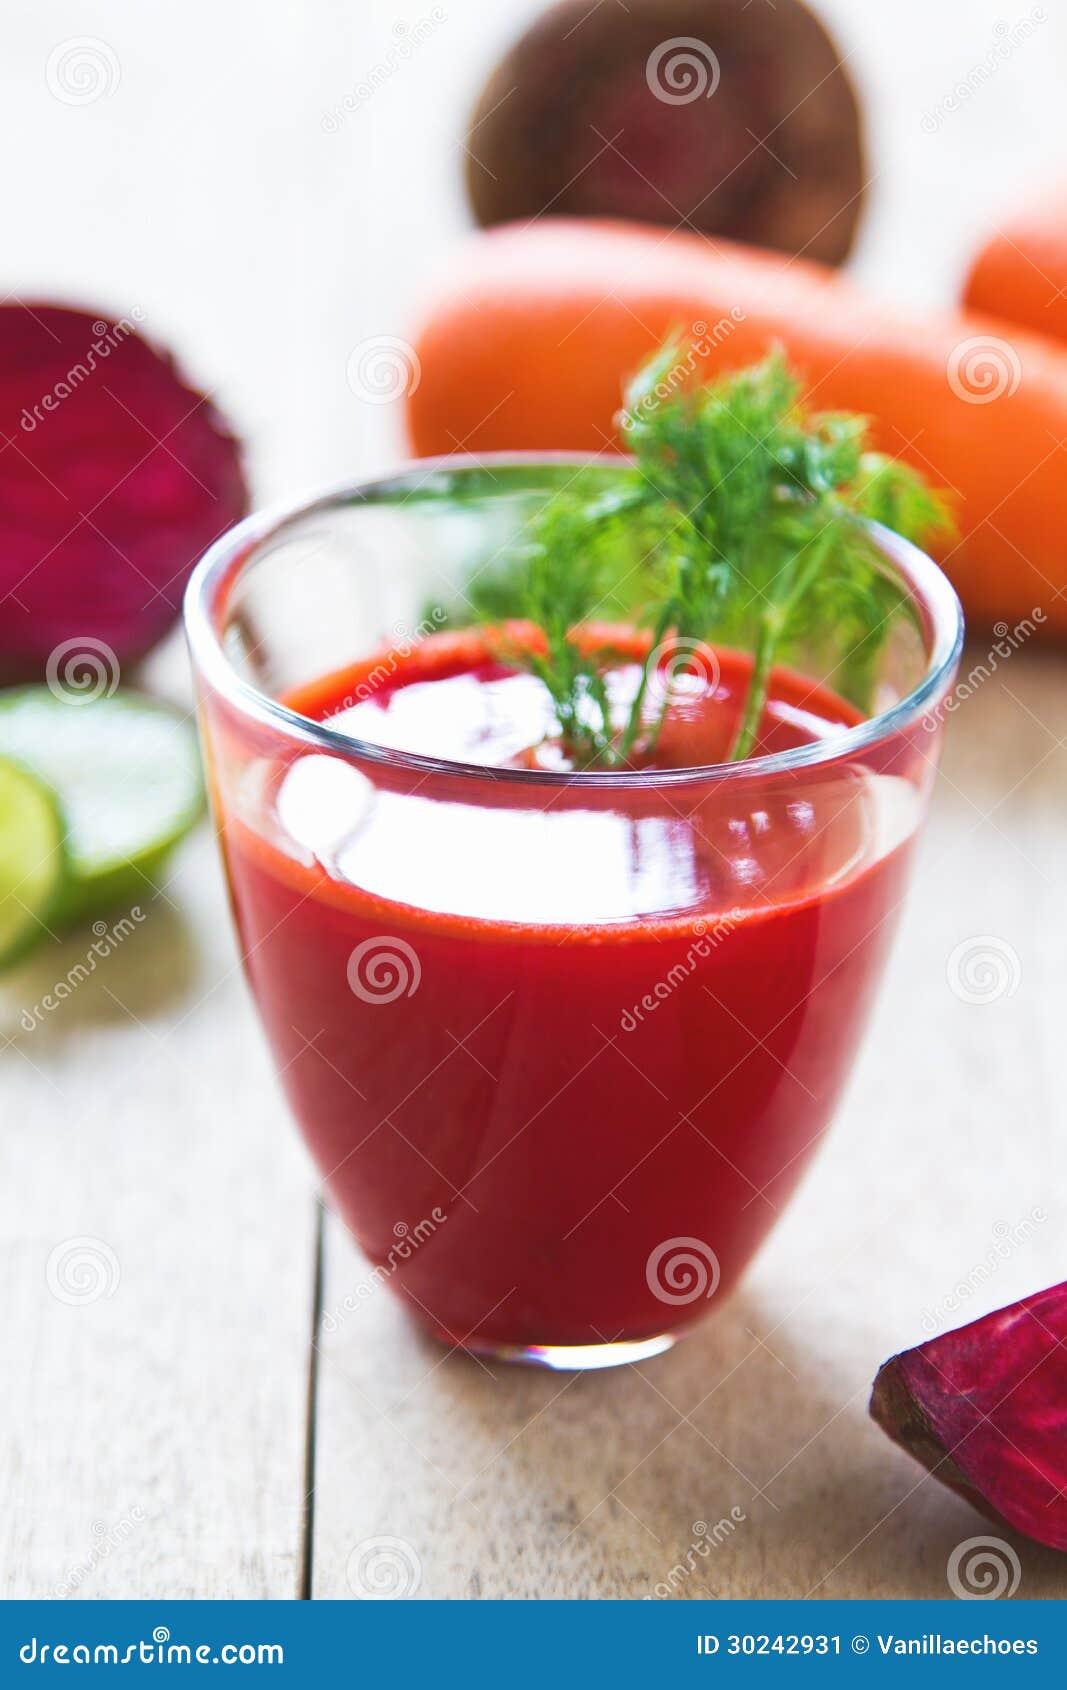 有機蔬果汁/蔬菜汁商品介紹-生機蔬菜系列|甜菜根汁|Beetroot Juice|225元(1瓶)